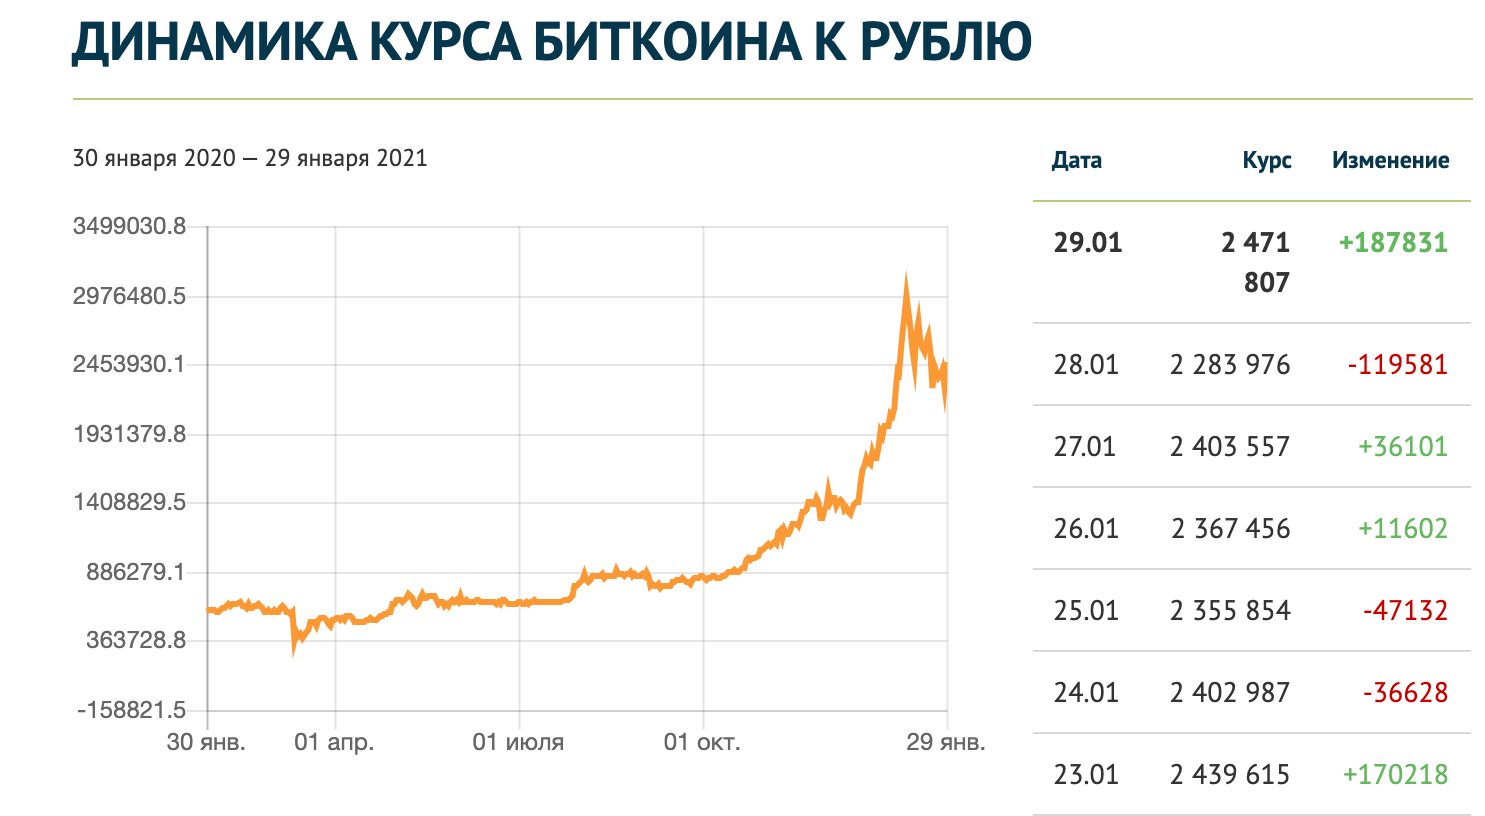 Курс доллара банк цб. Биткоин динамика курса. Курс биткоина к рублю. Курс биткоина к рублю график. Биткойн динамика курса за год.